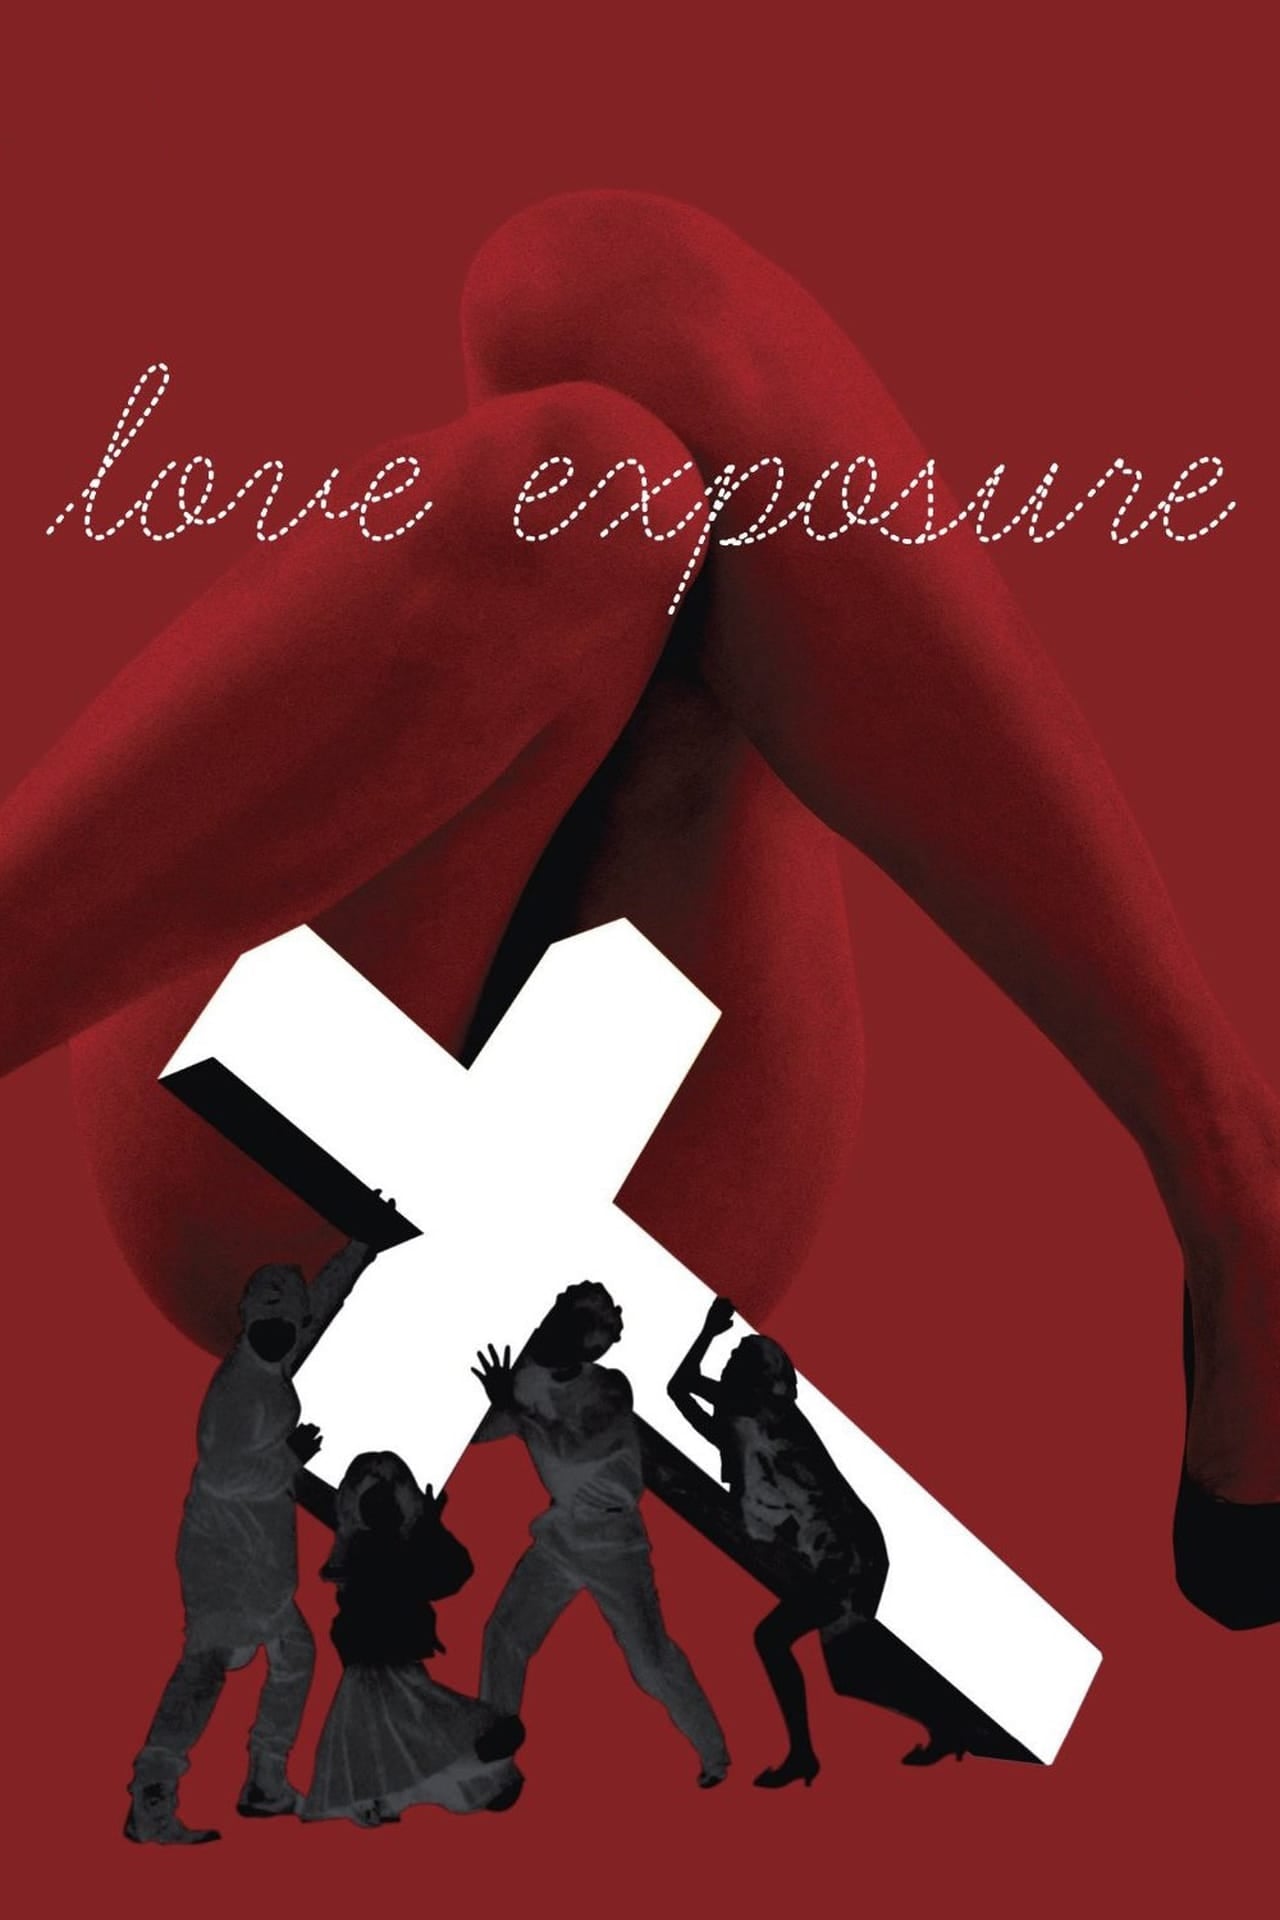 Plakát pro film “Pod vlivem lásky”